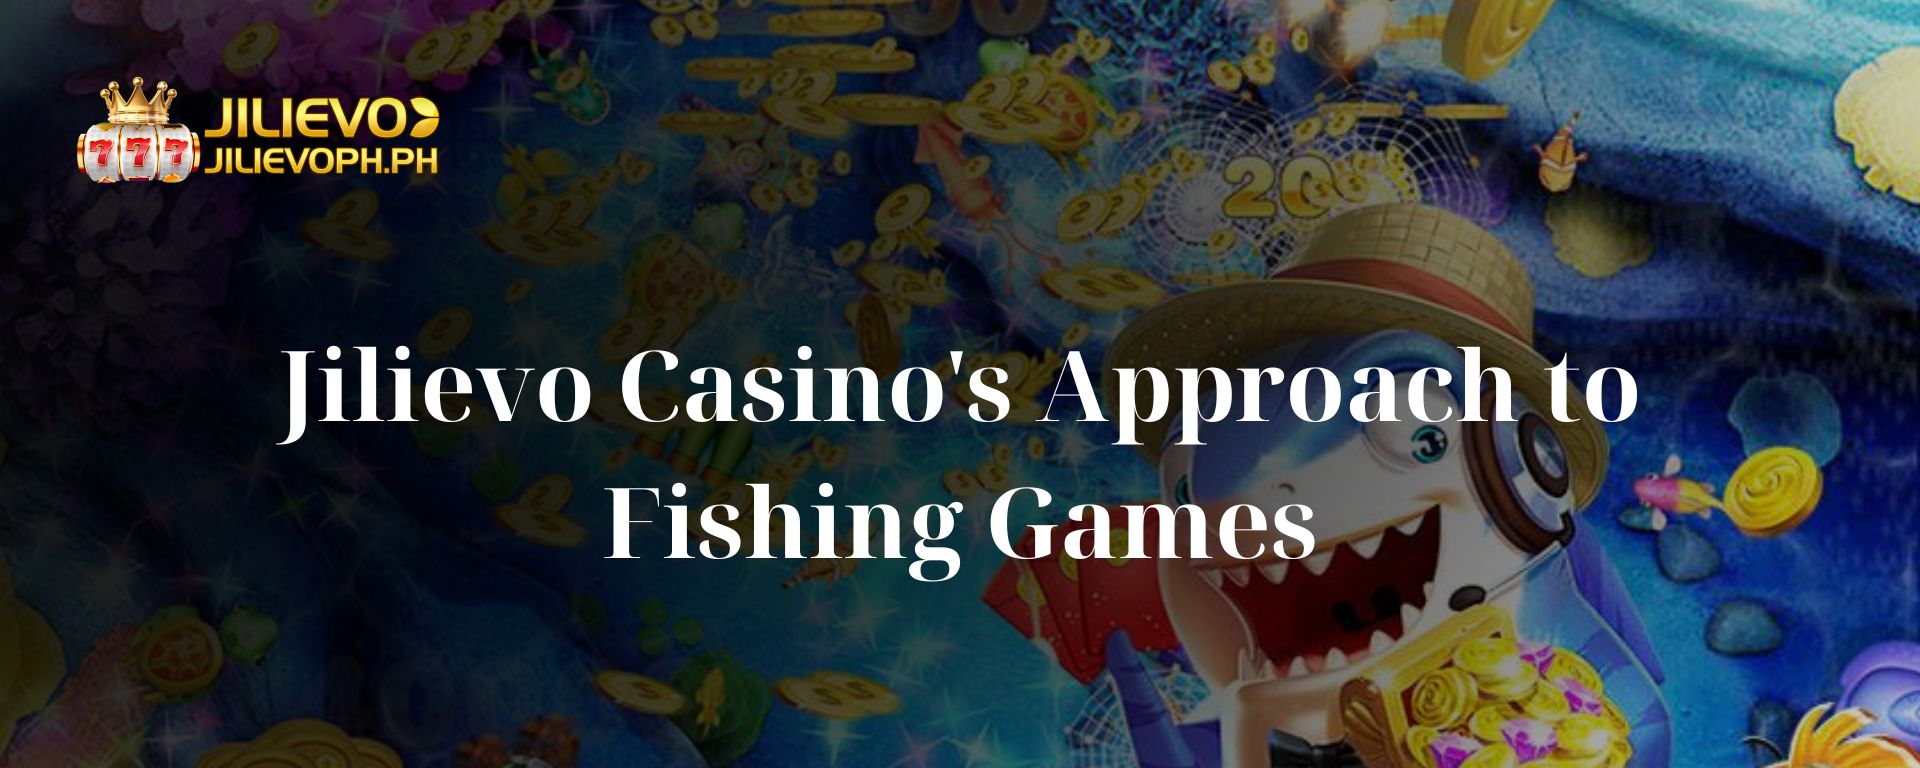 Jilievo Casino's Approach to Fishing Games